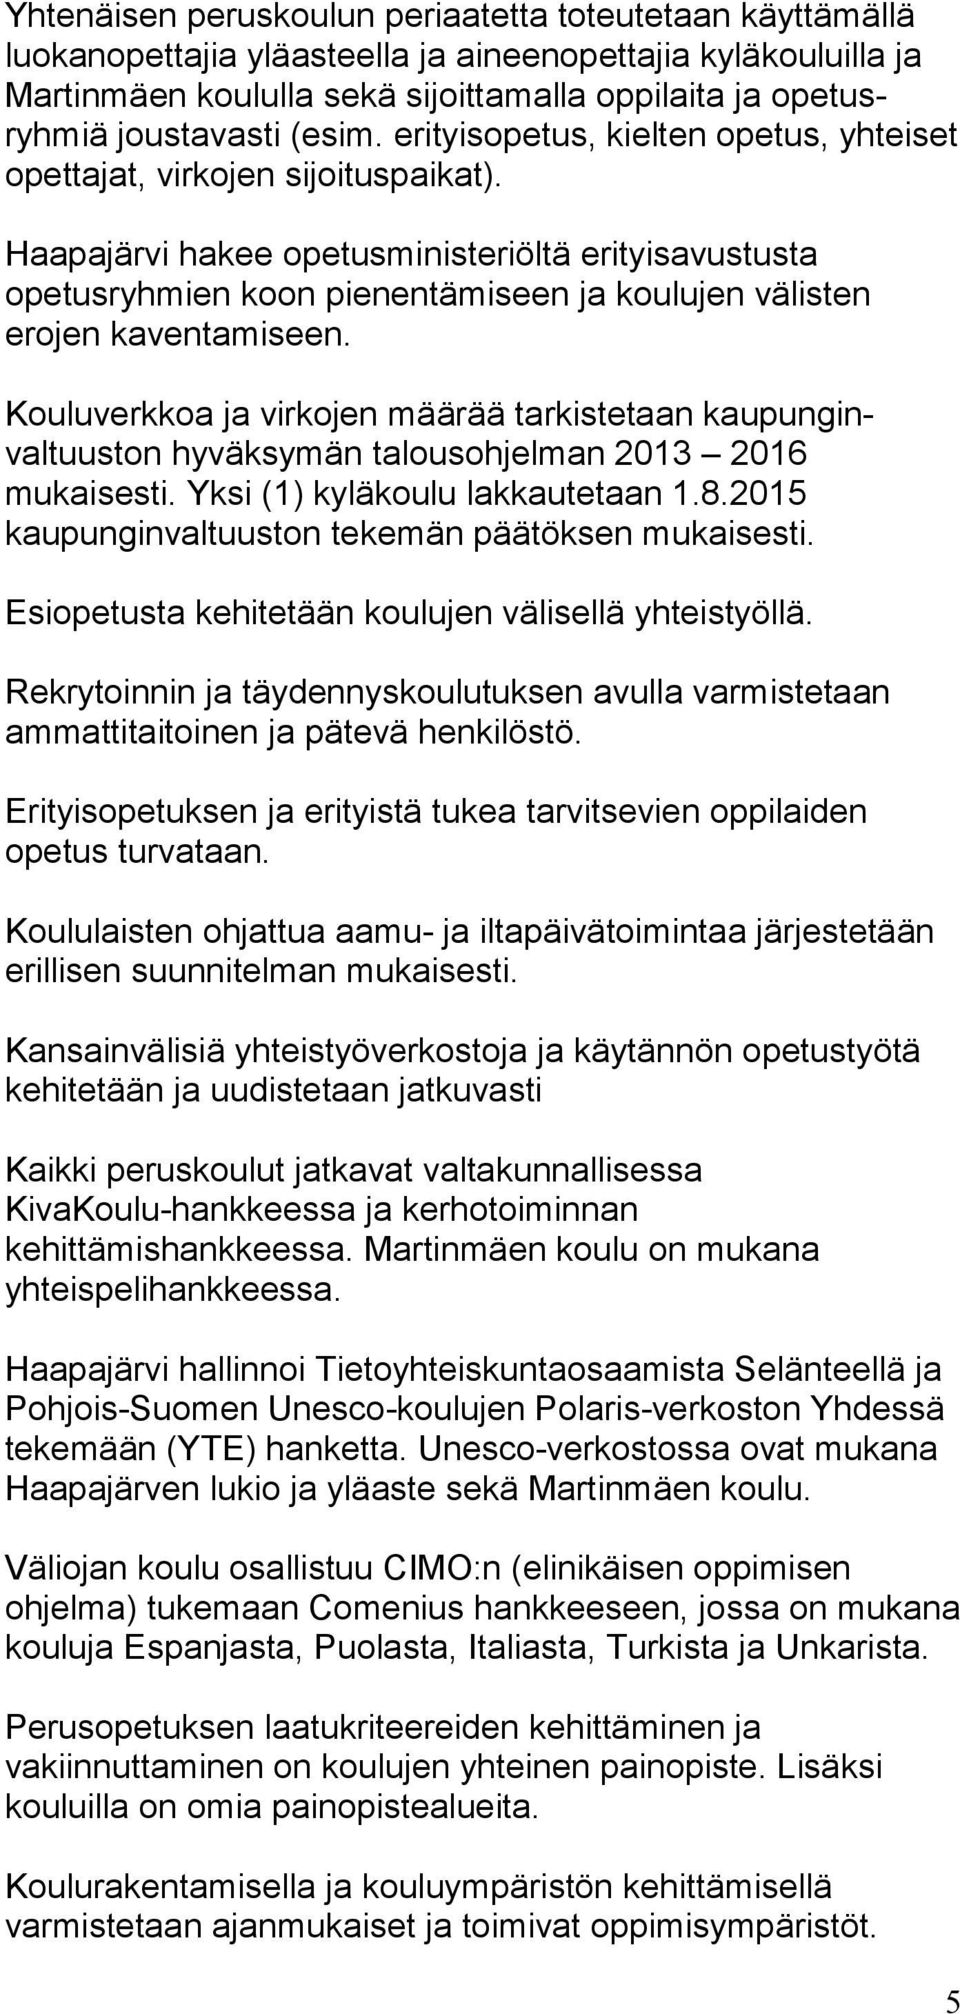 Haapajärvi hakee opetus ministeriöltä erityisavustusta opetusryhmien koon pienentä miseen ja koulujen välisten erojen kaventamiseen.